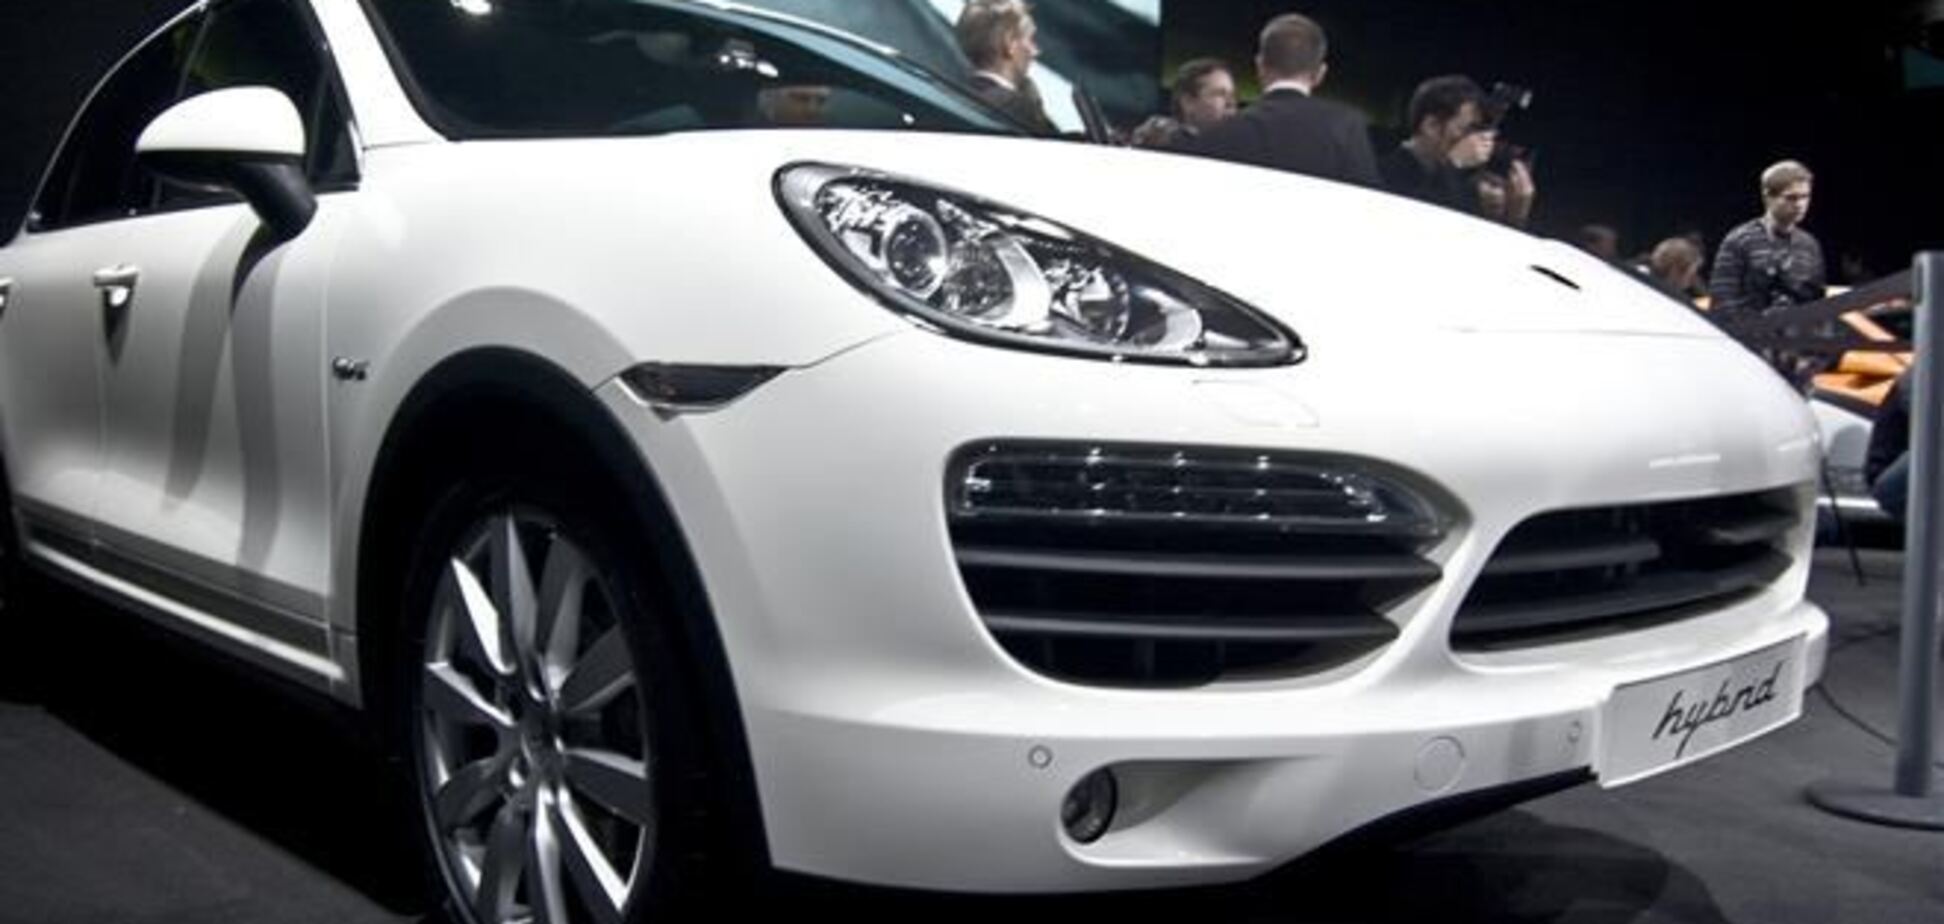 Организатор элитного борделя в центре Киева за год работы купила Porsche Cayenne